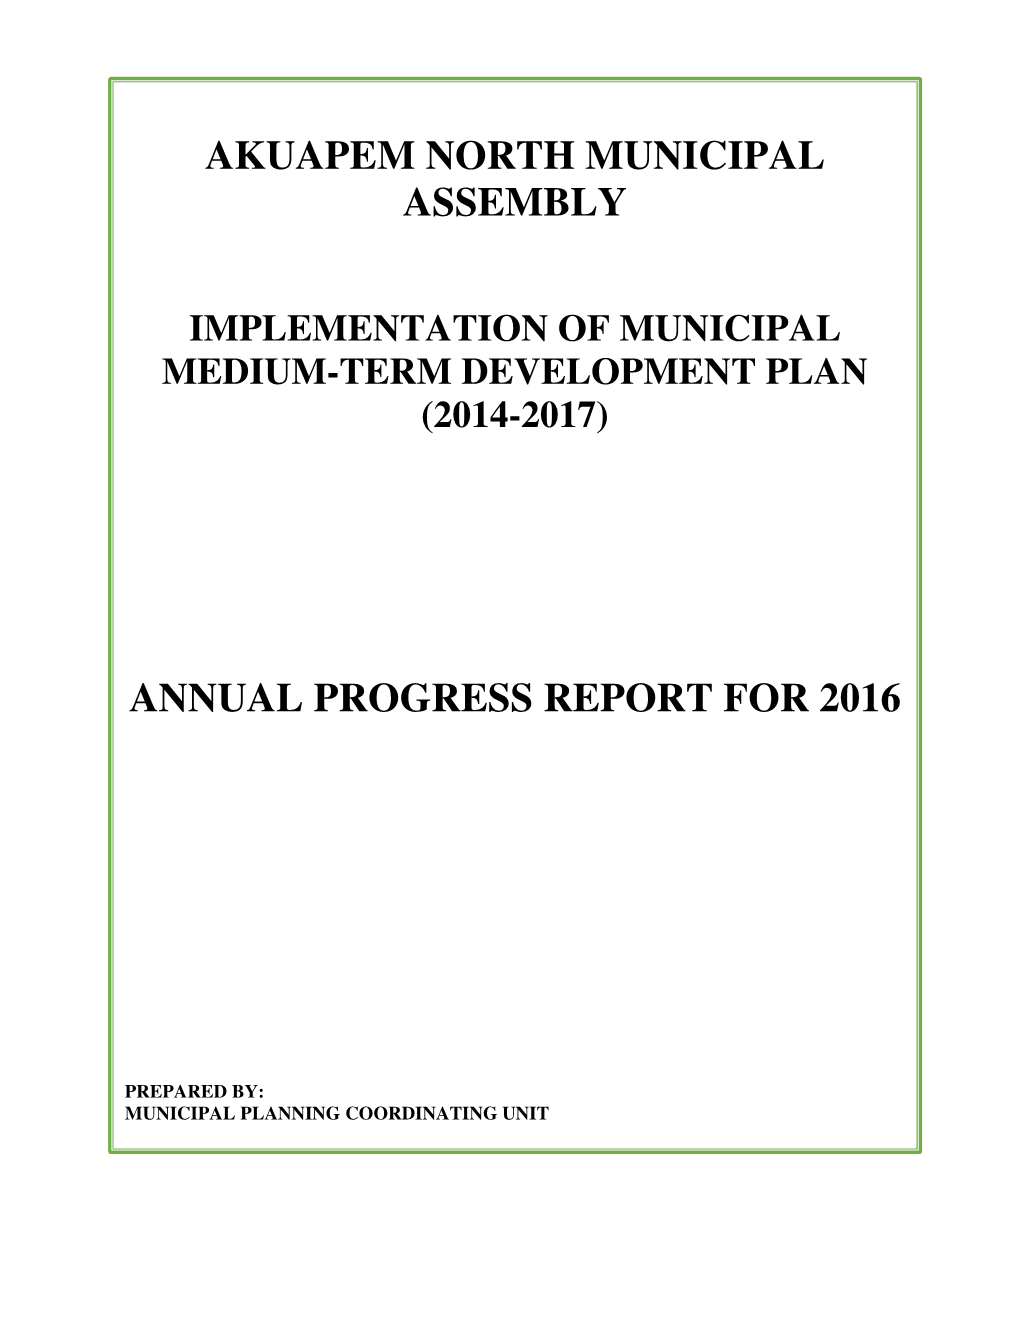 Akuapem North Municipal Assembly Annual Progress